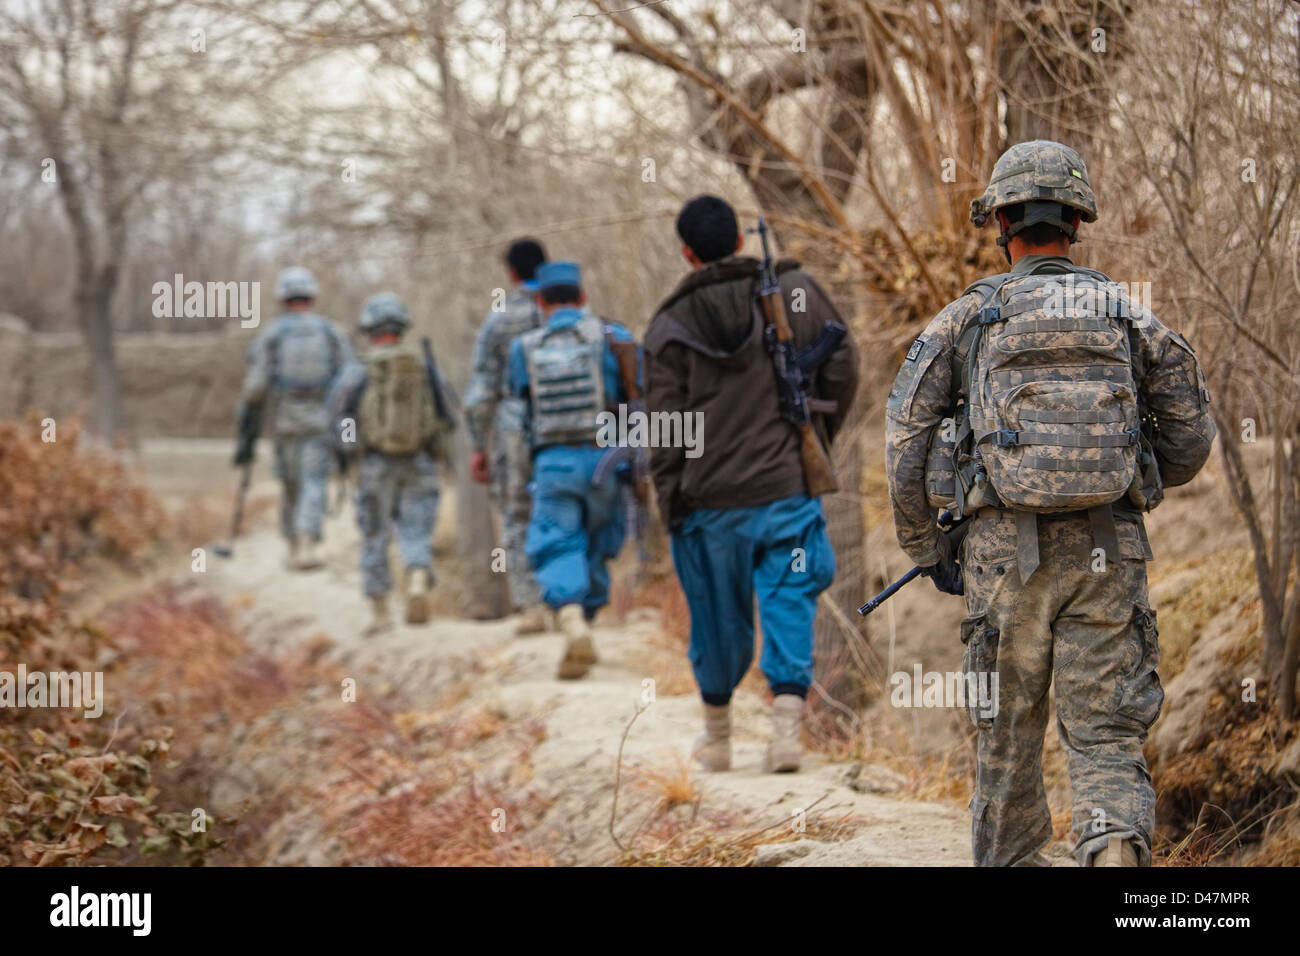 A Kandahar, Afghanistan - Gennaio 10, 2011: i soldati USA e la polizia nazionale afgana condurre un pattugliamento comune. Foto Stock